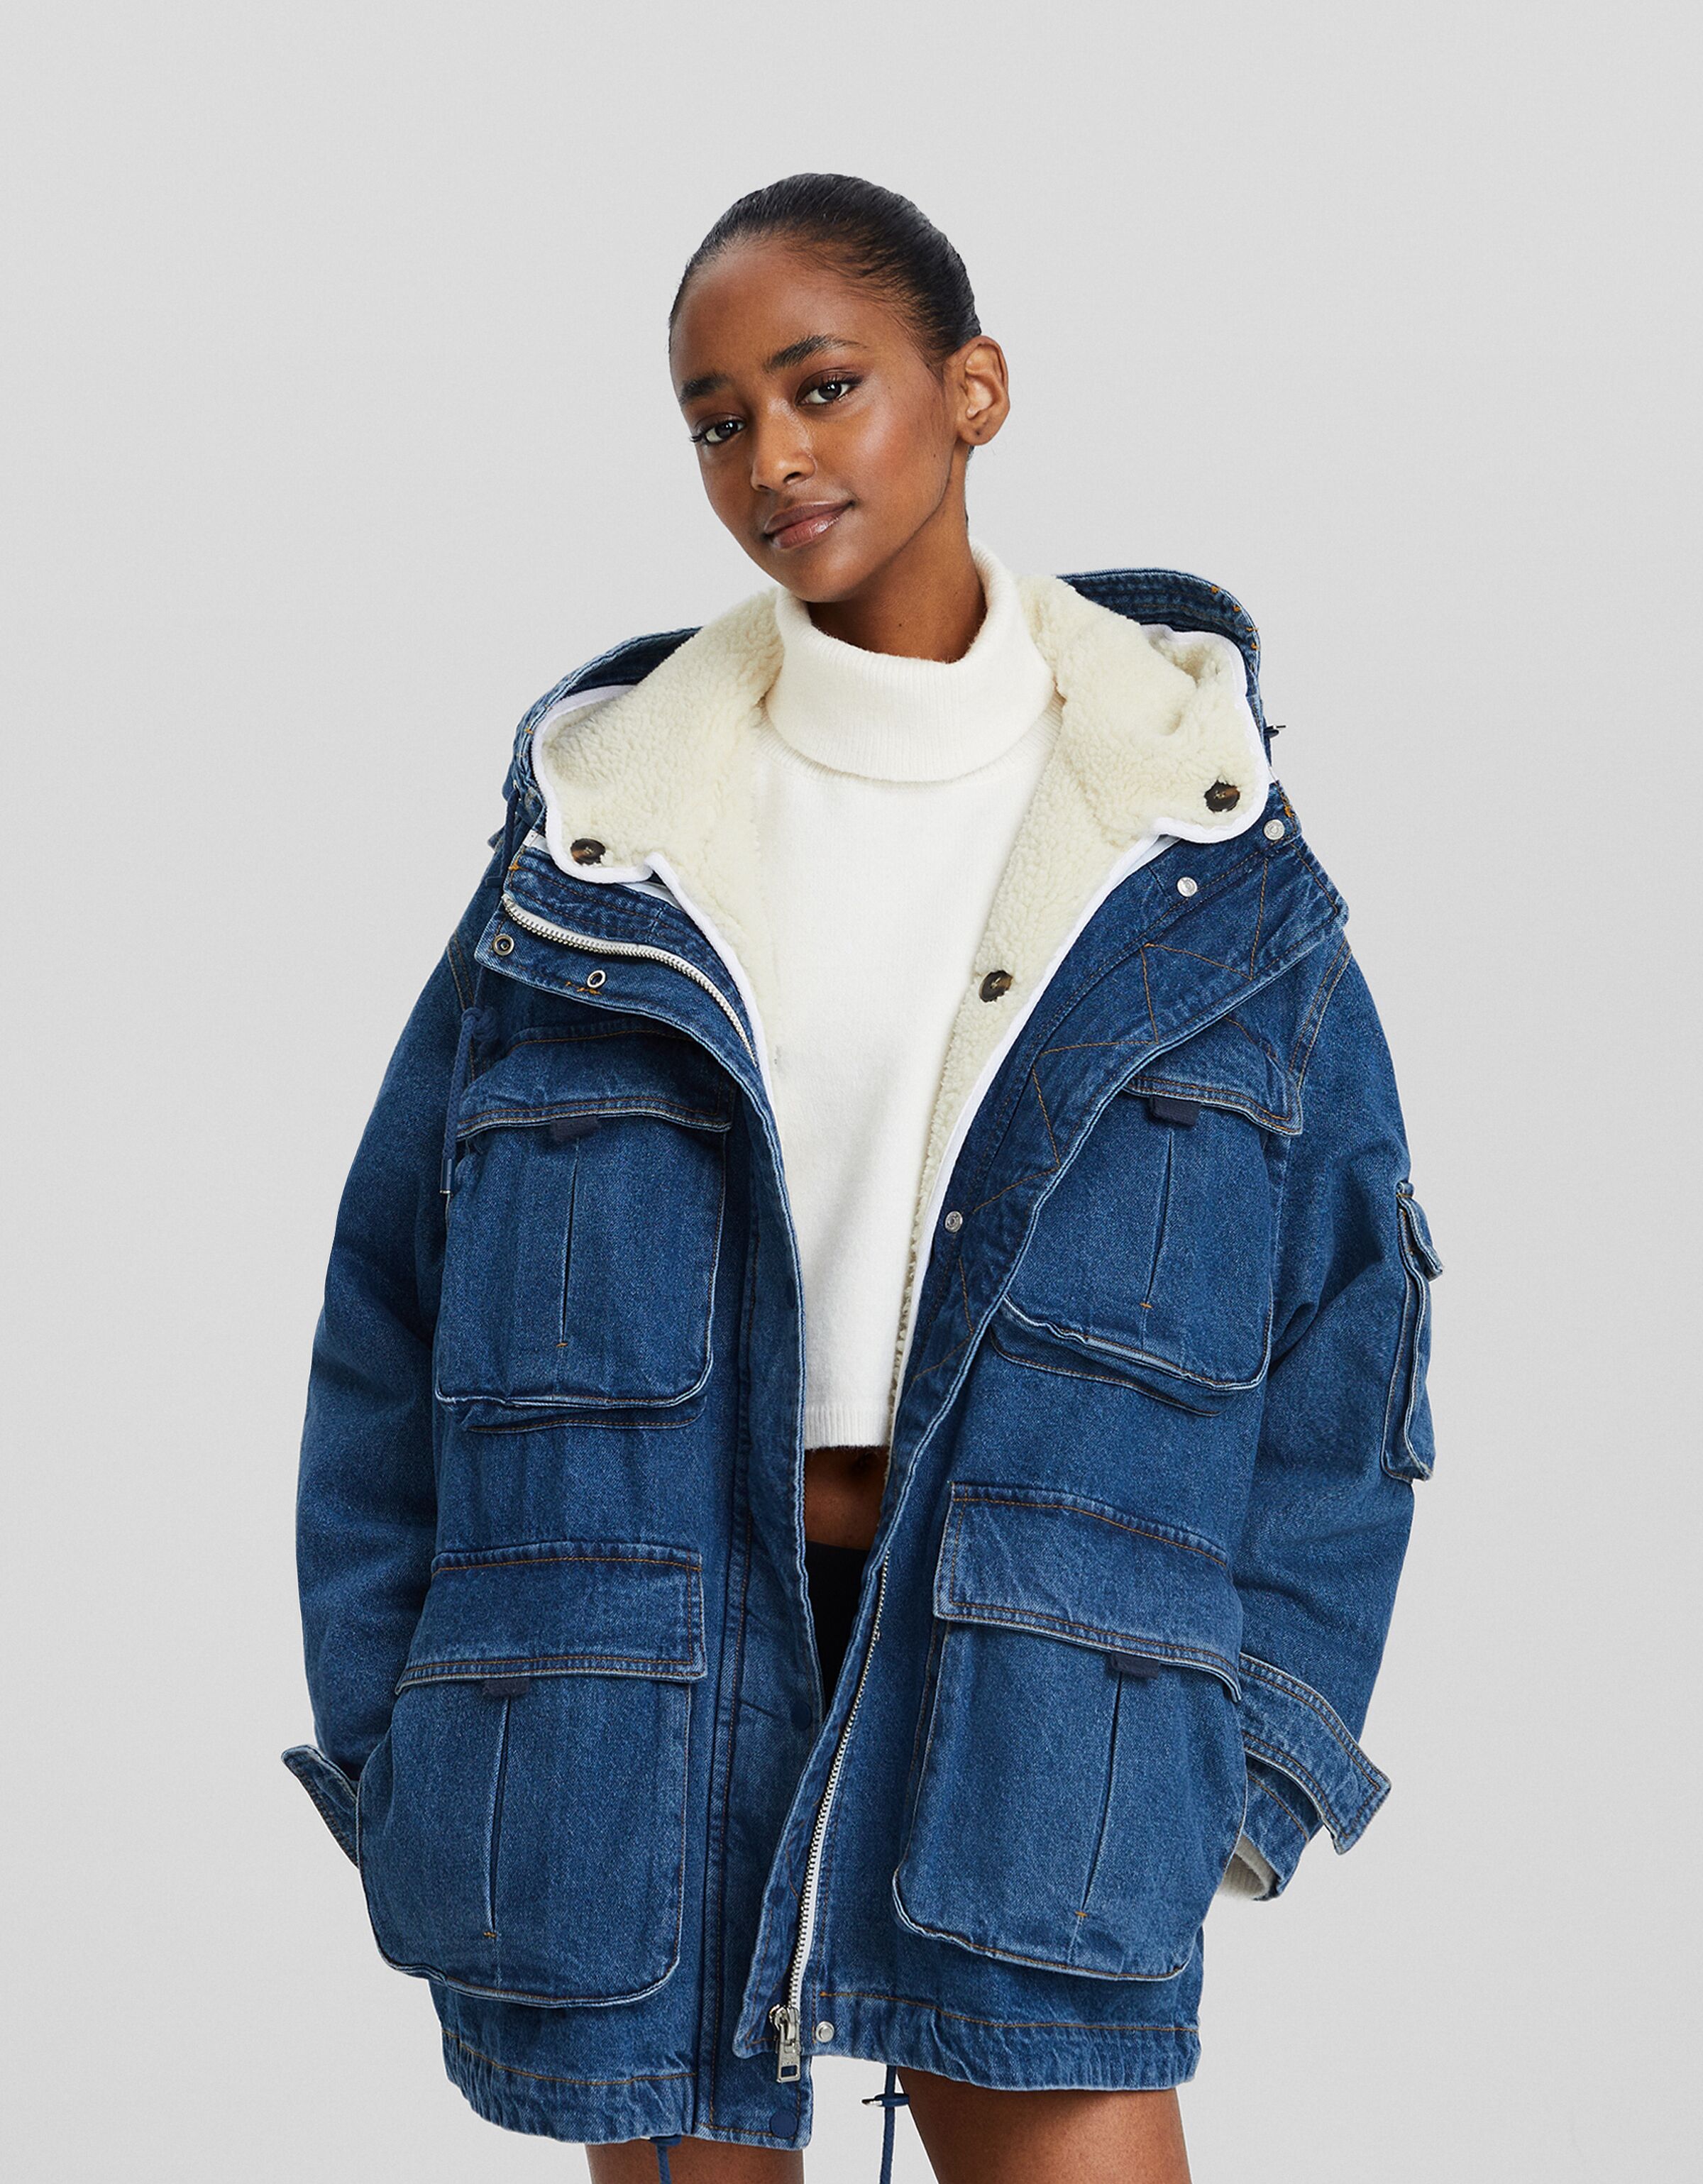 VIVICOLOR Women Long Denim Jacket Long Jean Jacket Long Sleeve Belted Denim  Jacket Trench Coat,Blue,S,M,L,XL at Amazon Women's Coats Shop